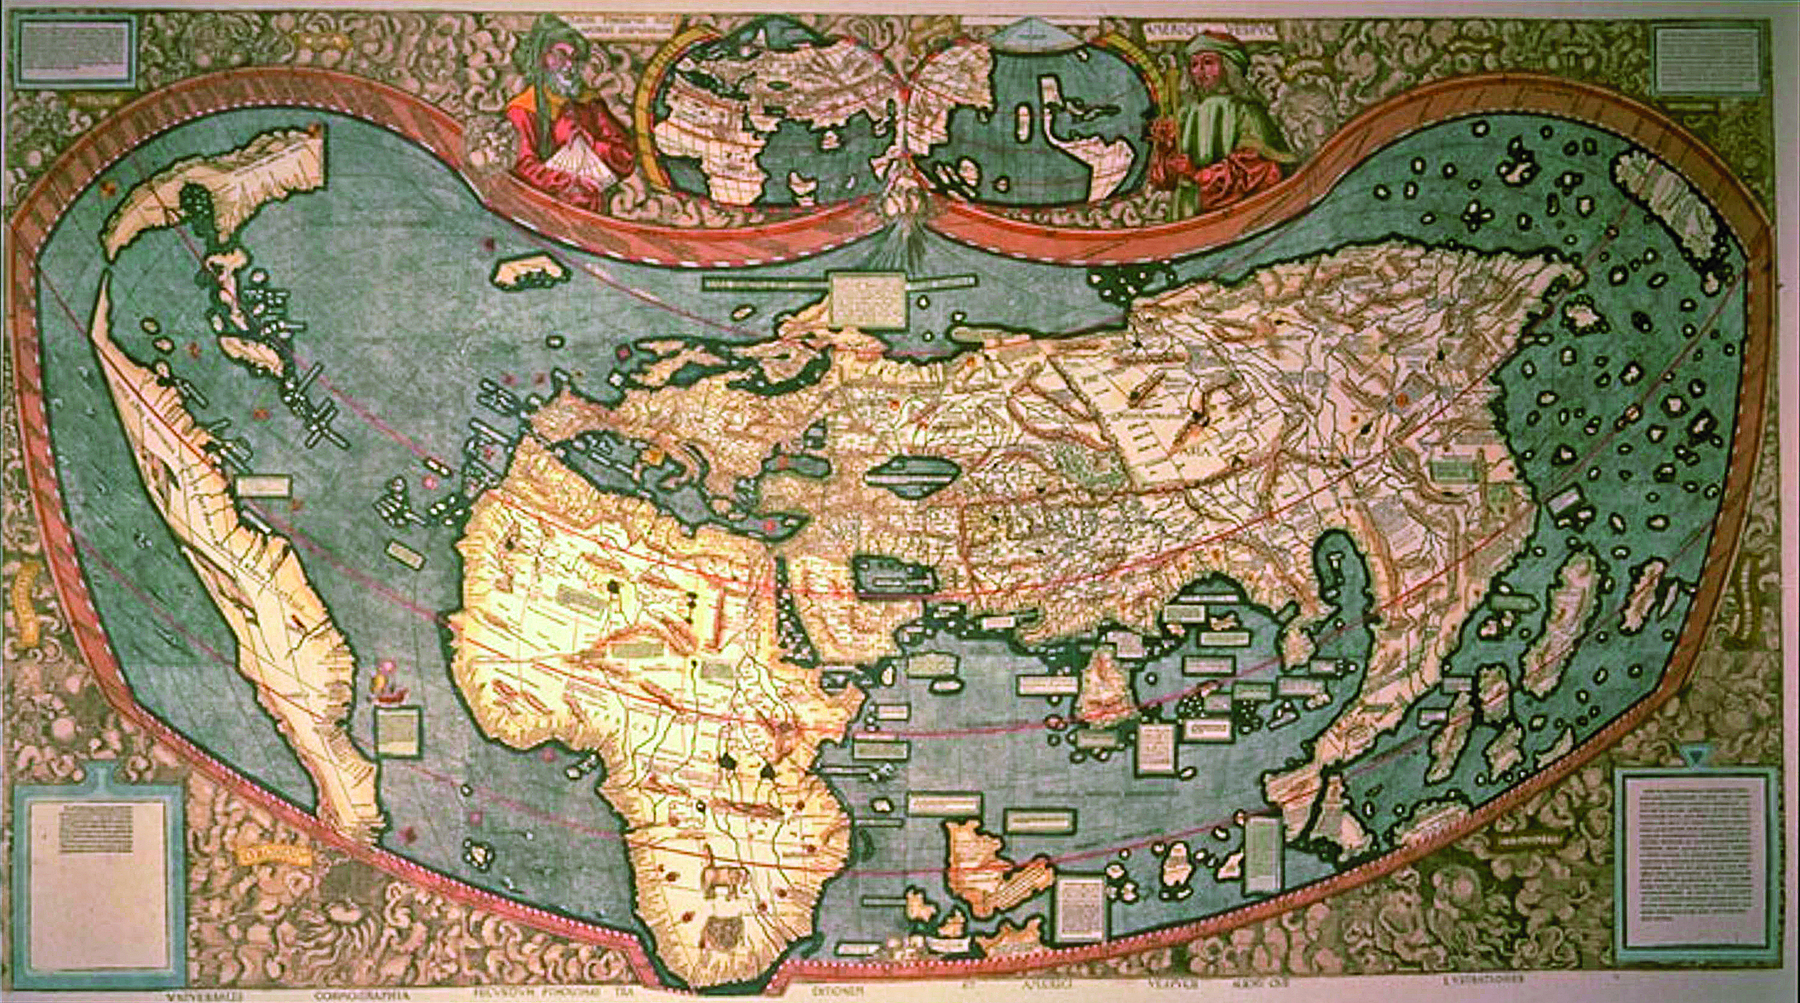 Planisfério. Mapa representando os continentes com formas distorcidas, destacando a América, África, Europa, Ásia e Oceania, cercados por águas oceânicas.